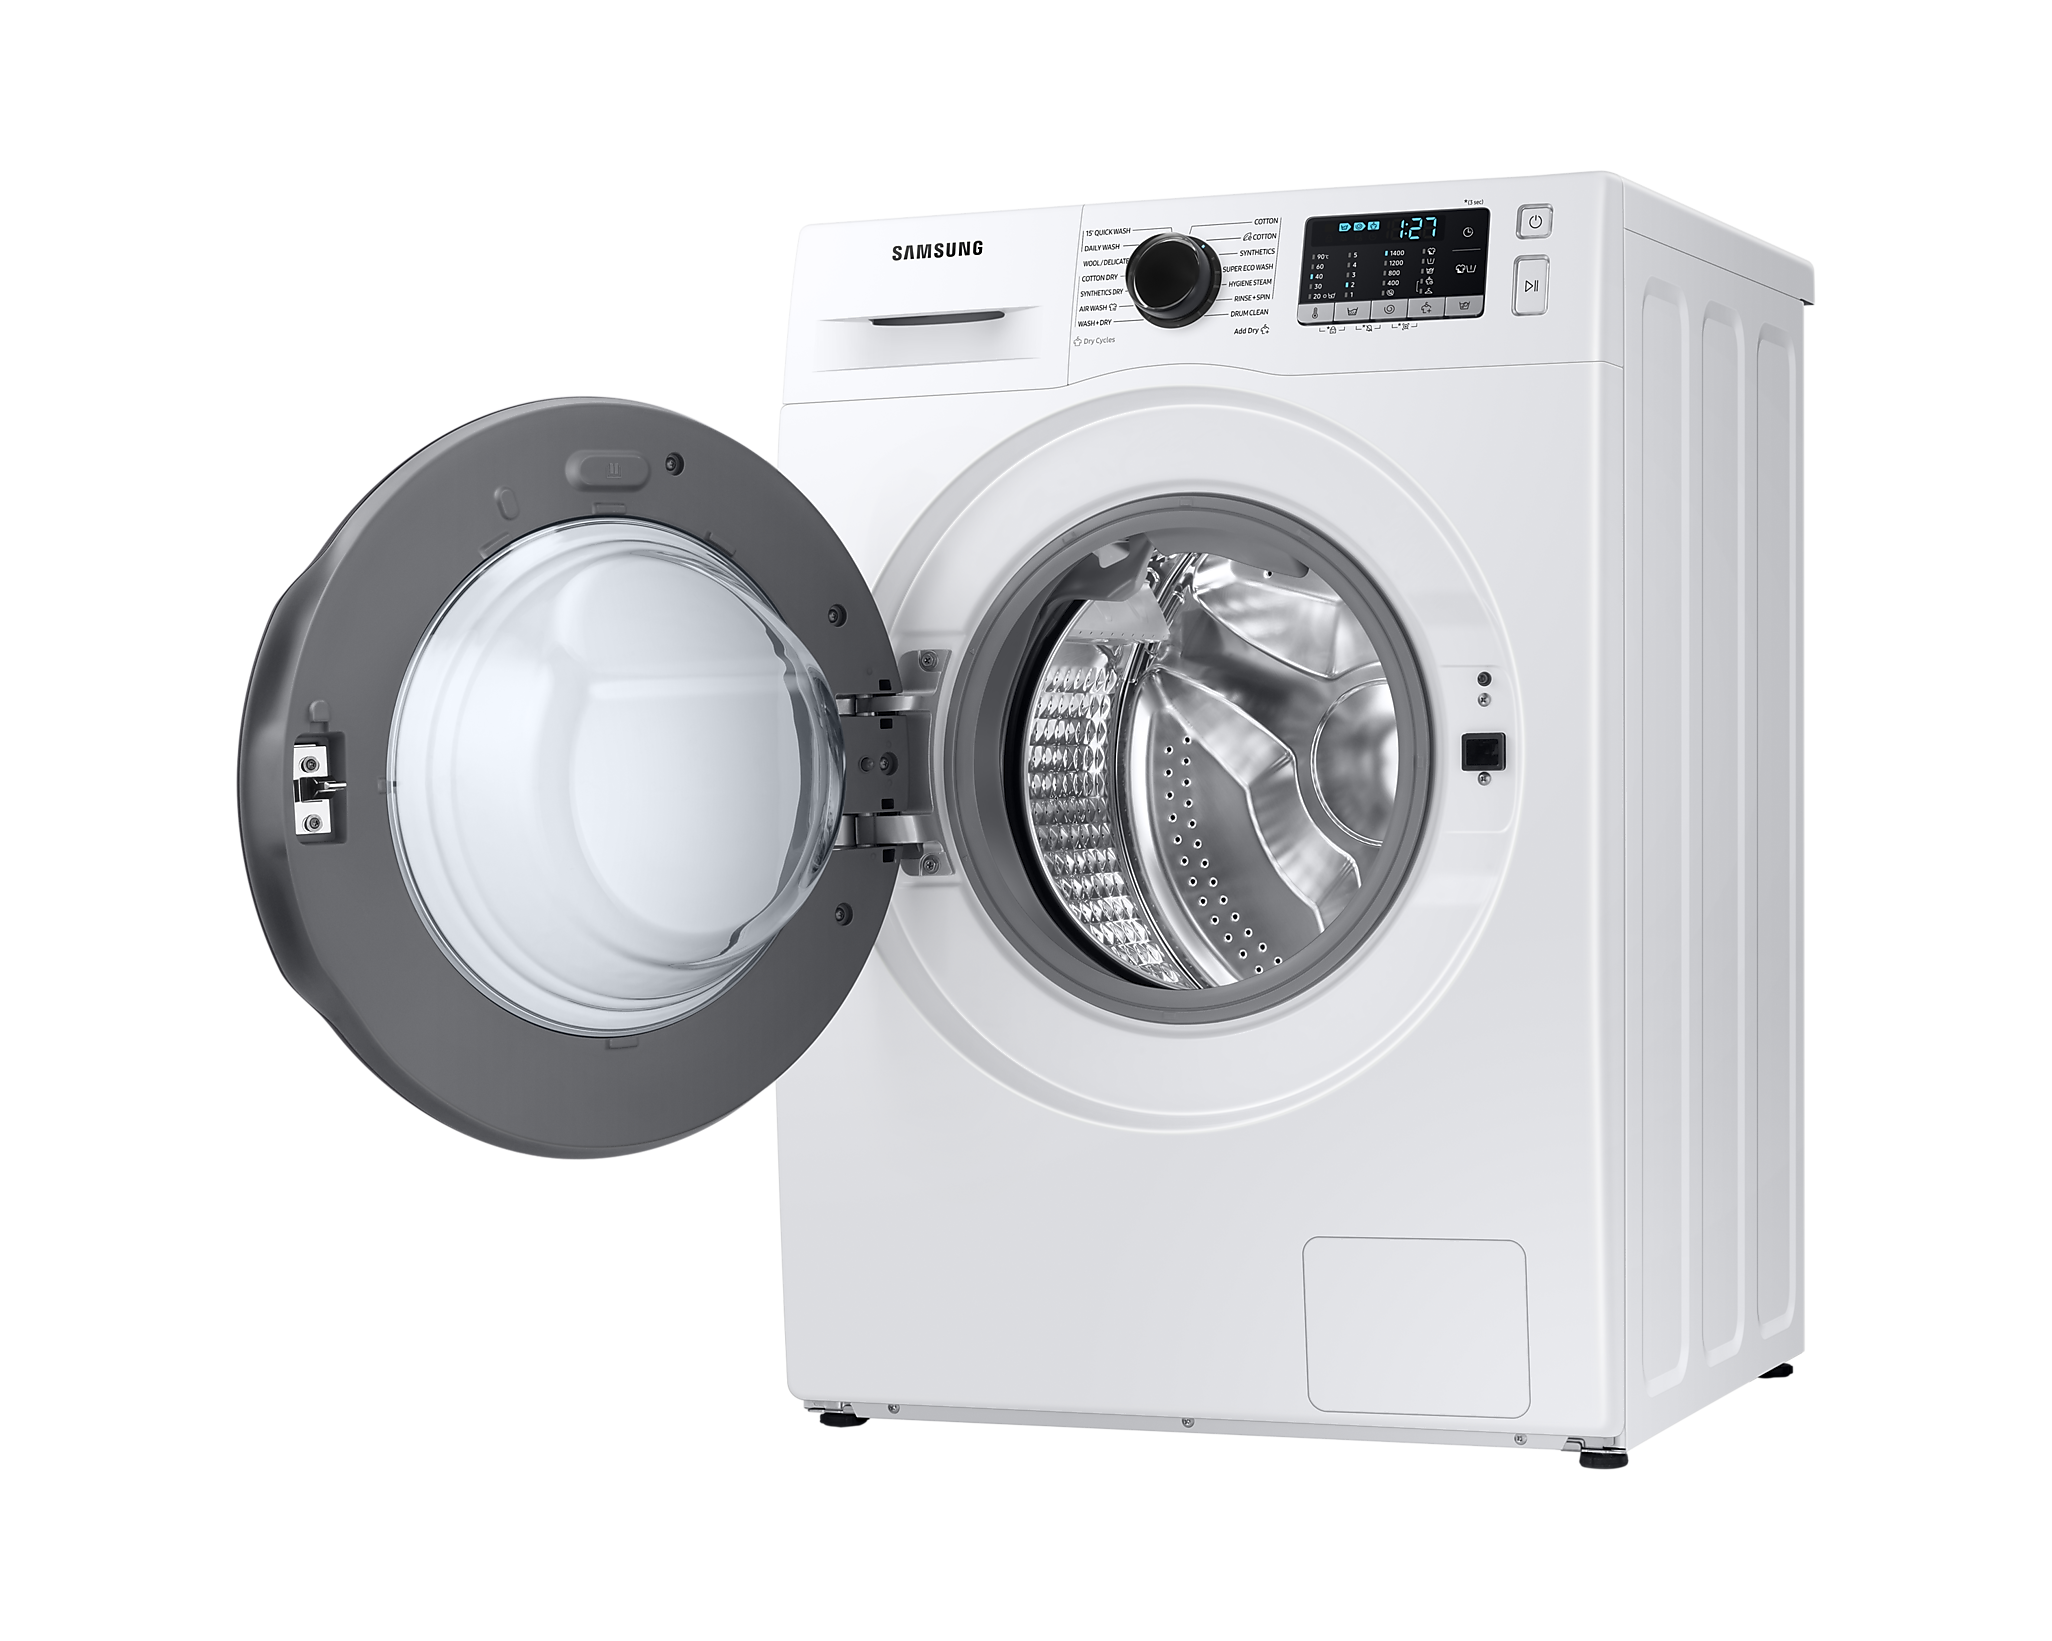 Samsung front loading Washing Machine , Washer Dryer, 8/5kg 1400 rpm